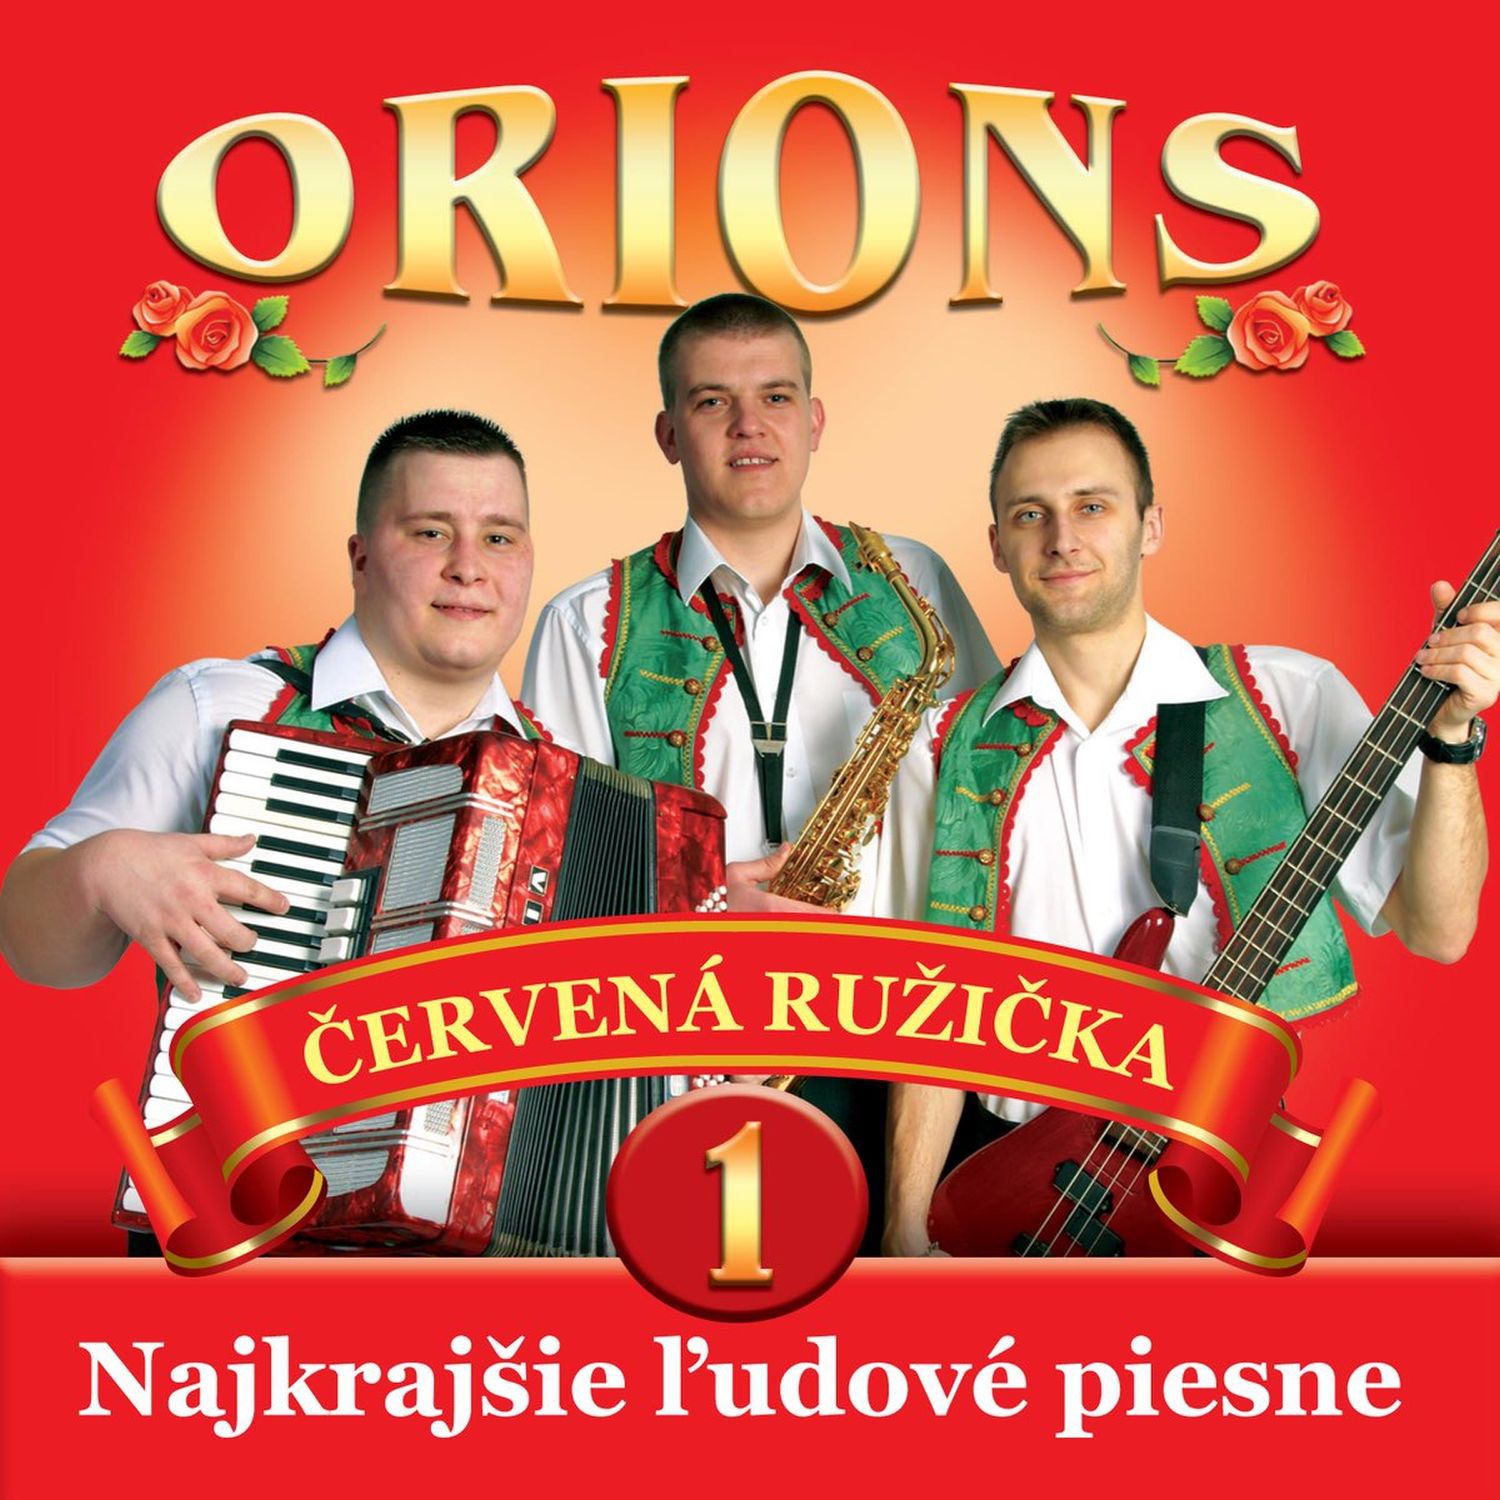 CD Shop - ORIONS 1 CERVENA RUZICKA